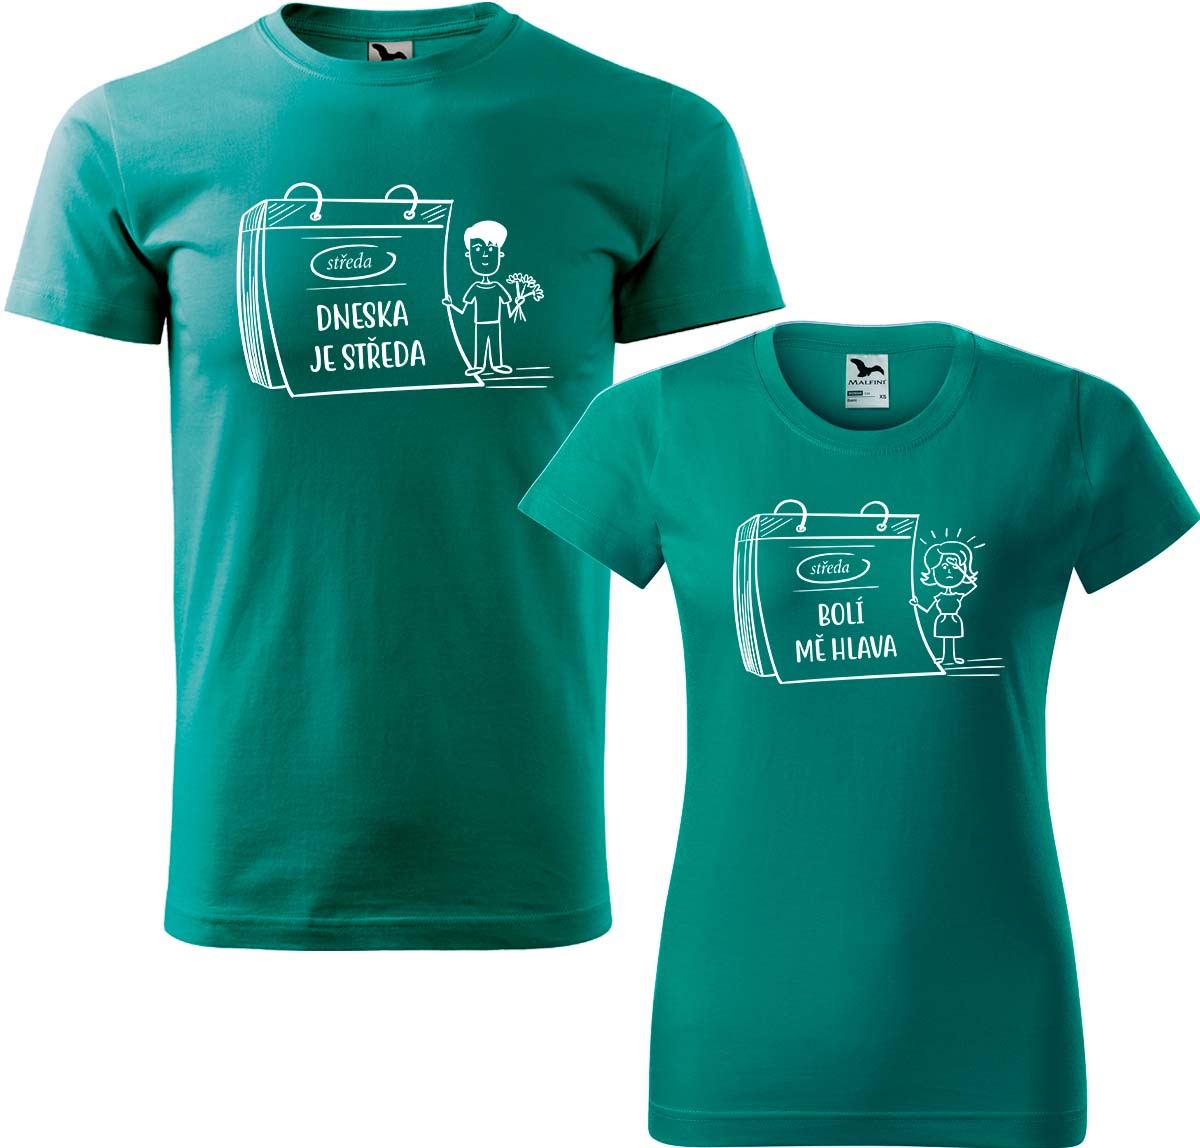 Trička pro páry - Dneska je středa Barva: Emerald (19), Velikost dámské tričko: XL, Velikost pánské tričko: XL